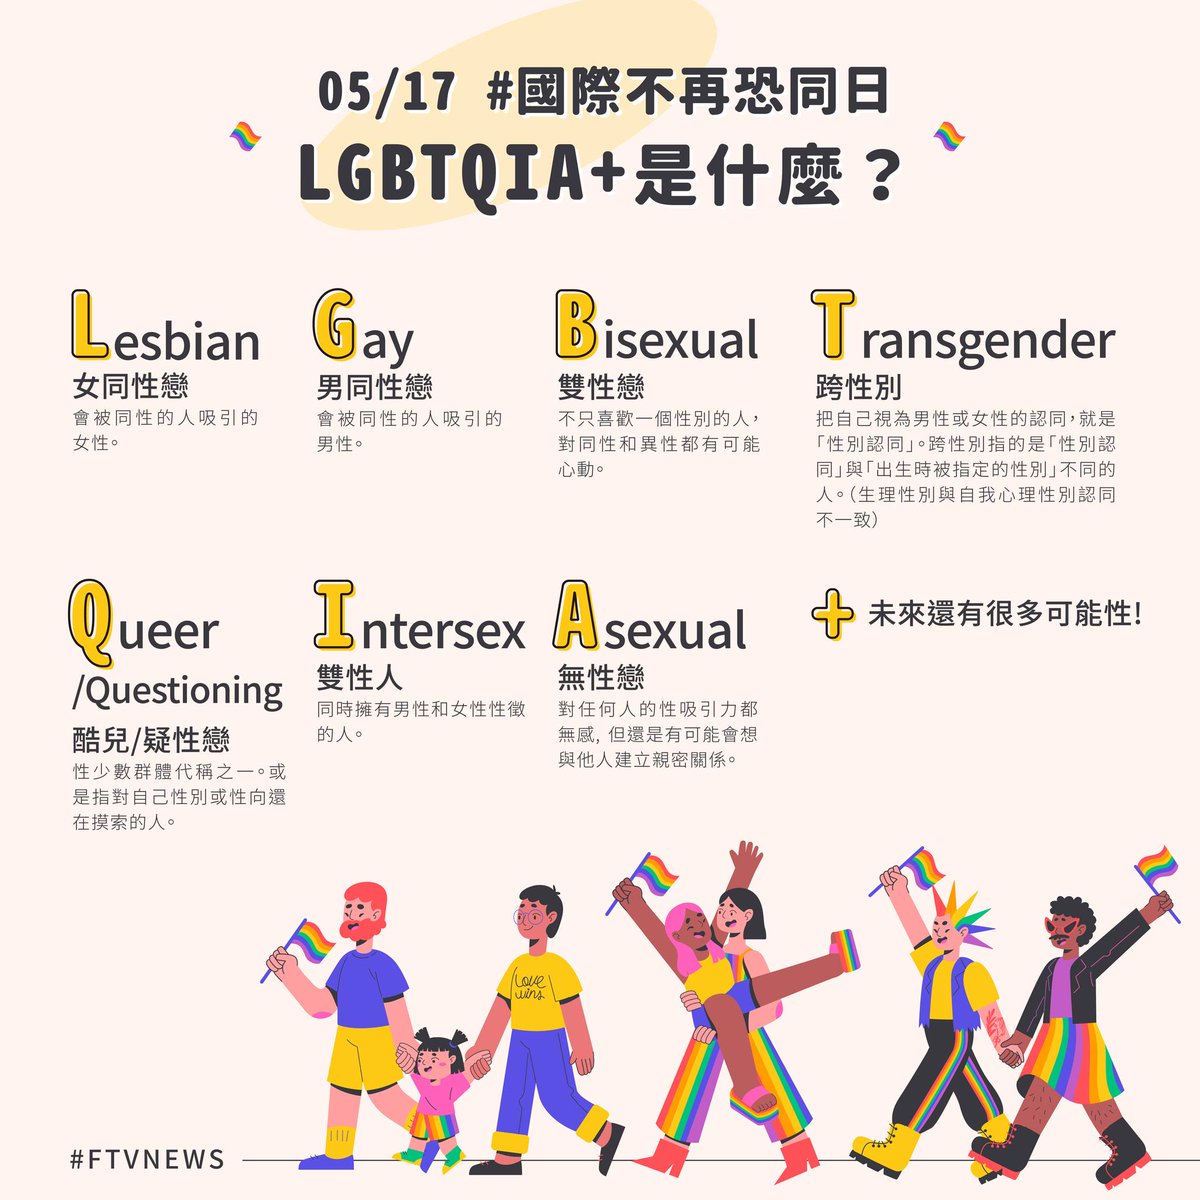 ▌5/17國際不再恐同日LGBTQIA+ 到底是什麼？ LGBTQIA+分別代表不同性傾向或性別身分認同的性少數群體，全部加在一起，就是一個「性小眾」的總稱，而「+」有持續增加中的意思，也代表在未來還有更多元的可能性！